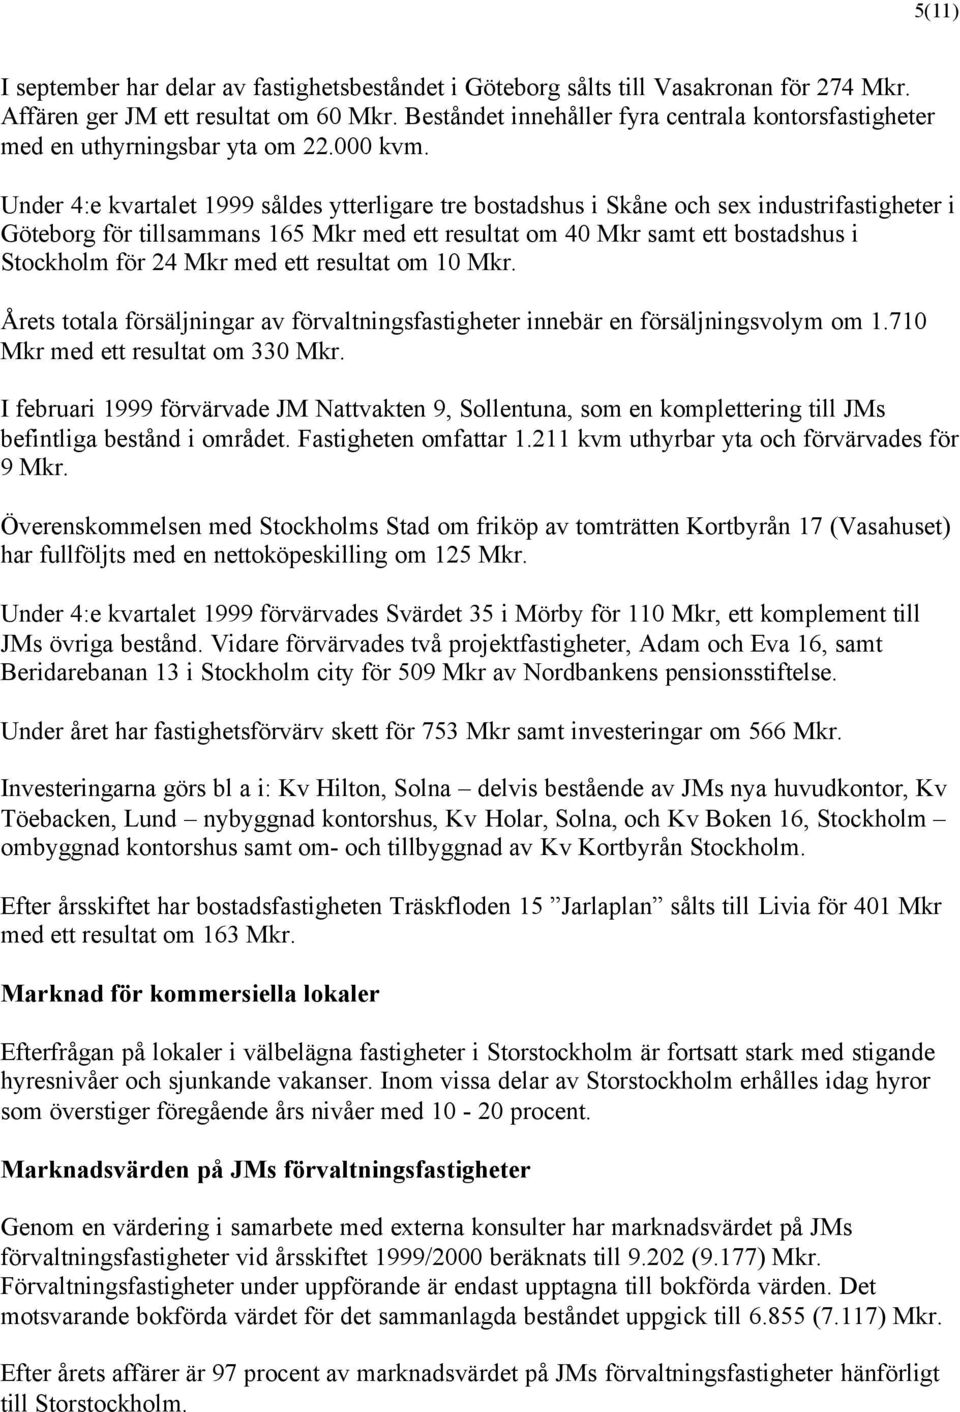 Under 4:e kvartalet 1999 såldes ytterligare tre bostadshus i Skåne och sex industrifastigheter i Göteborg för tillsammans 165 Mkr med ett resultat om 40 Mkr samt ett bostadshus i Stockholm för 24 Mkr